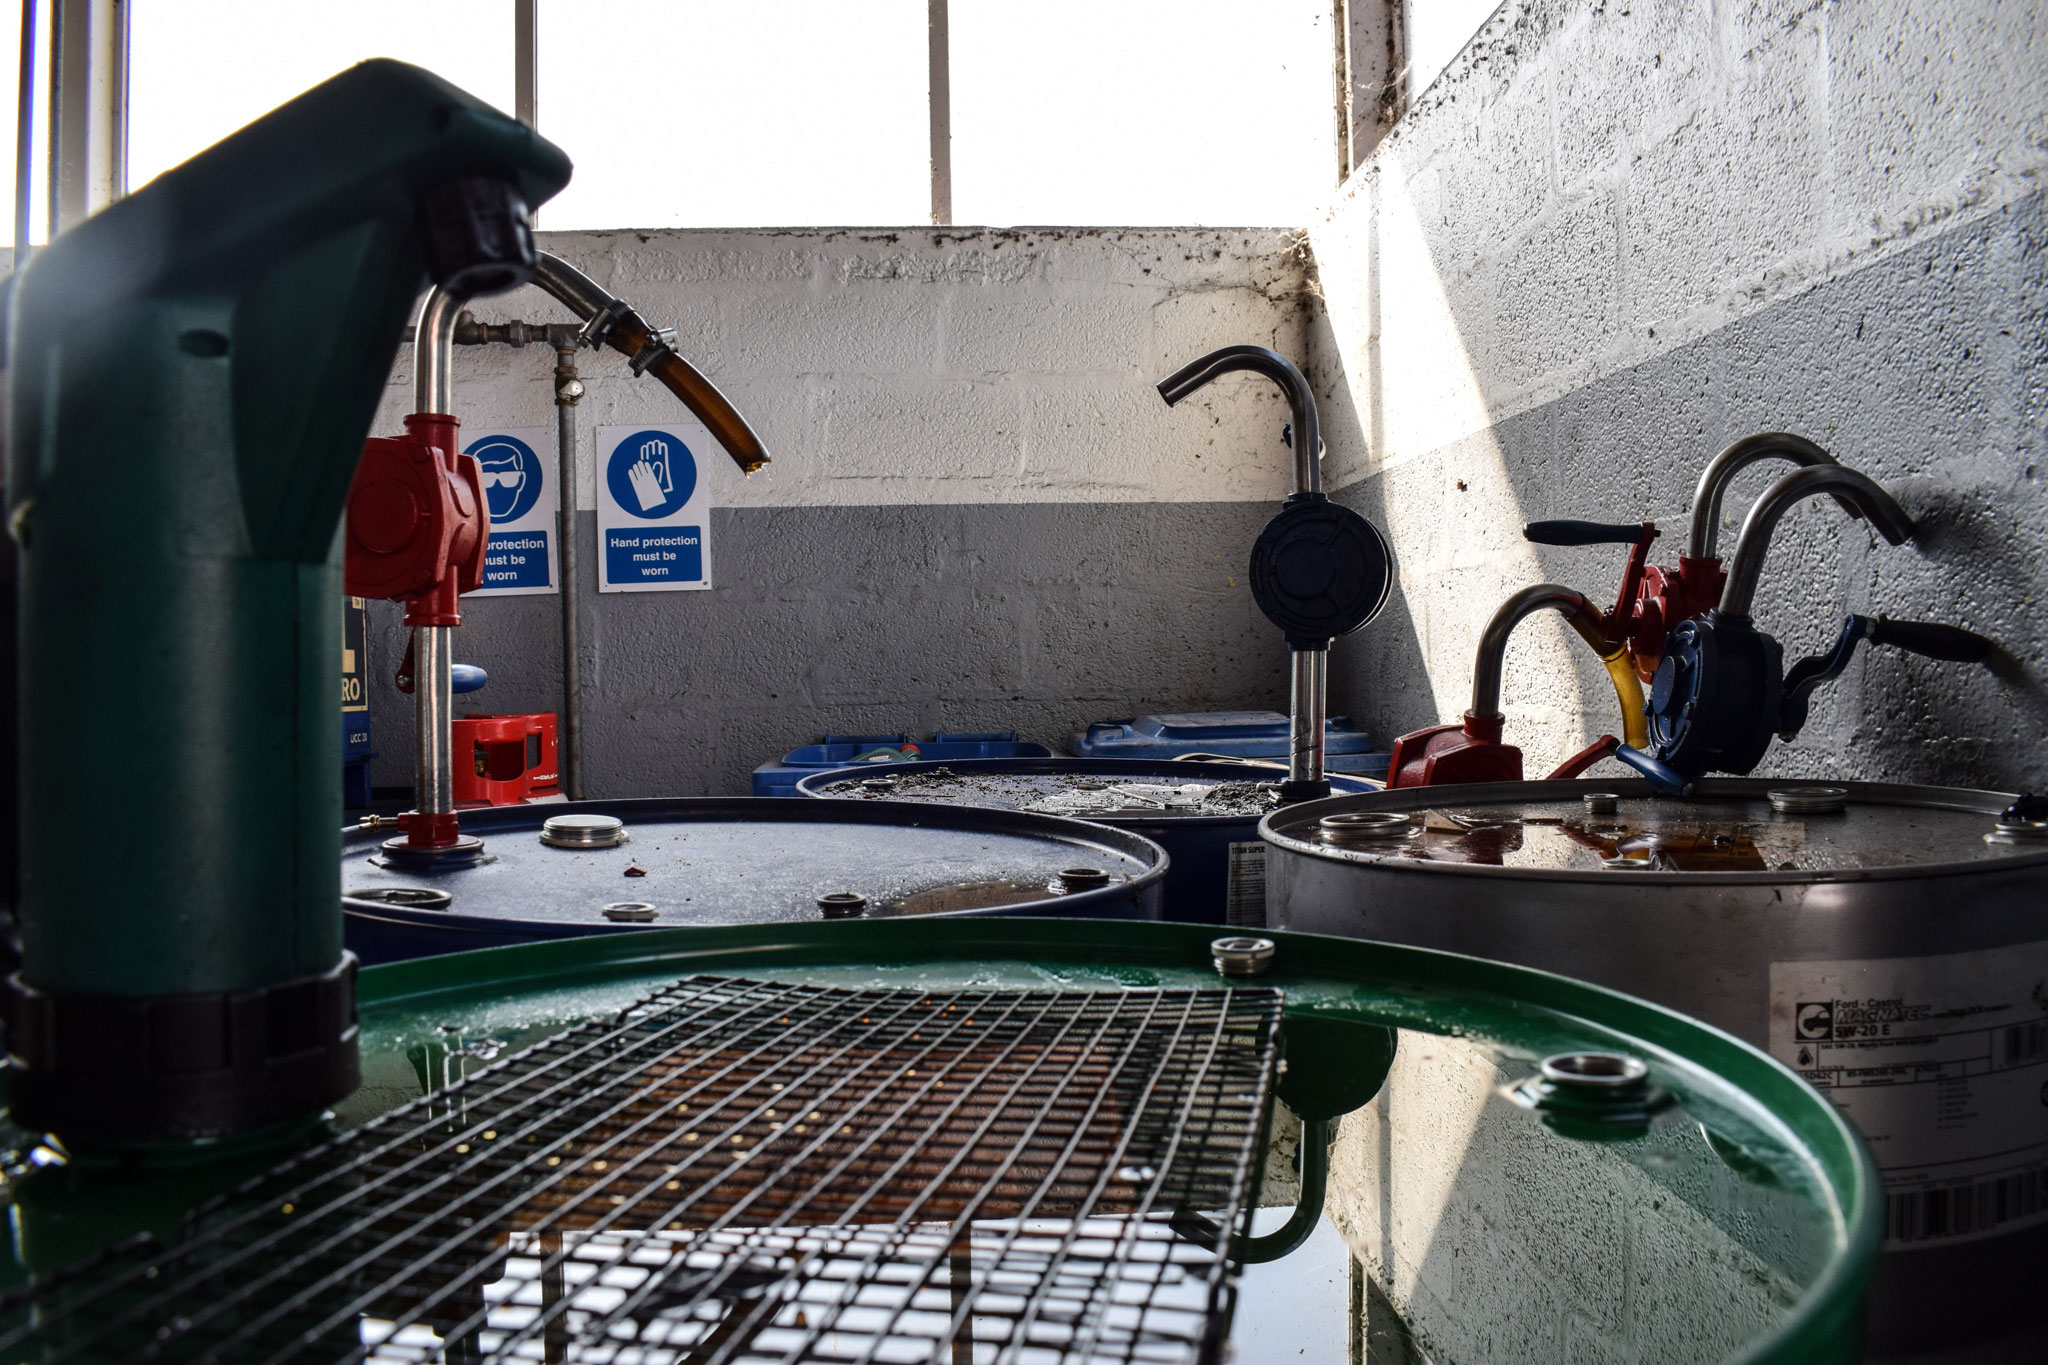 Oil kegs in workshop